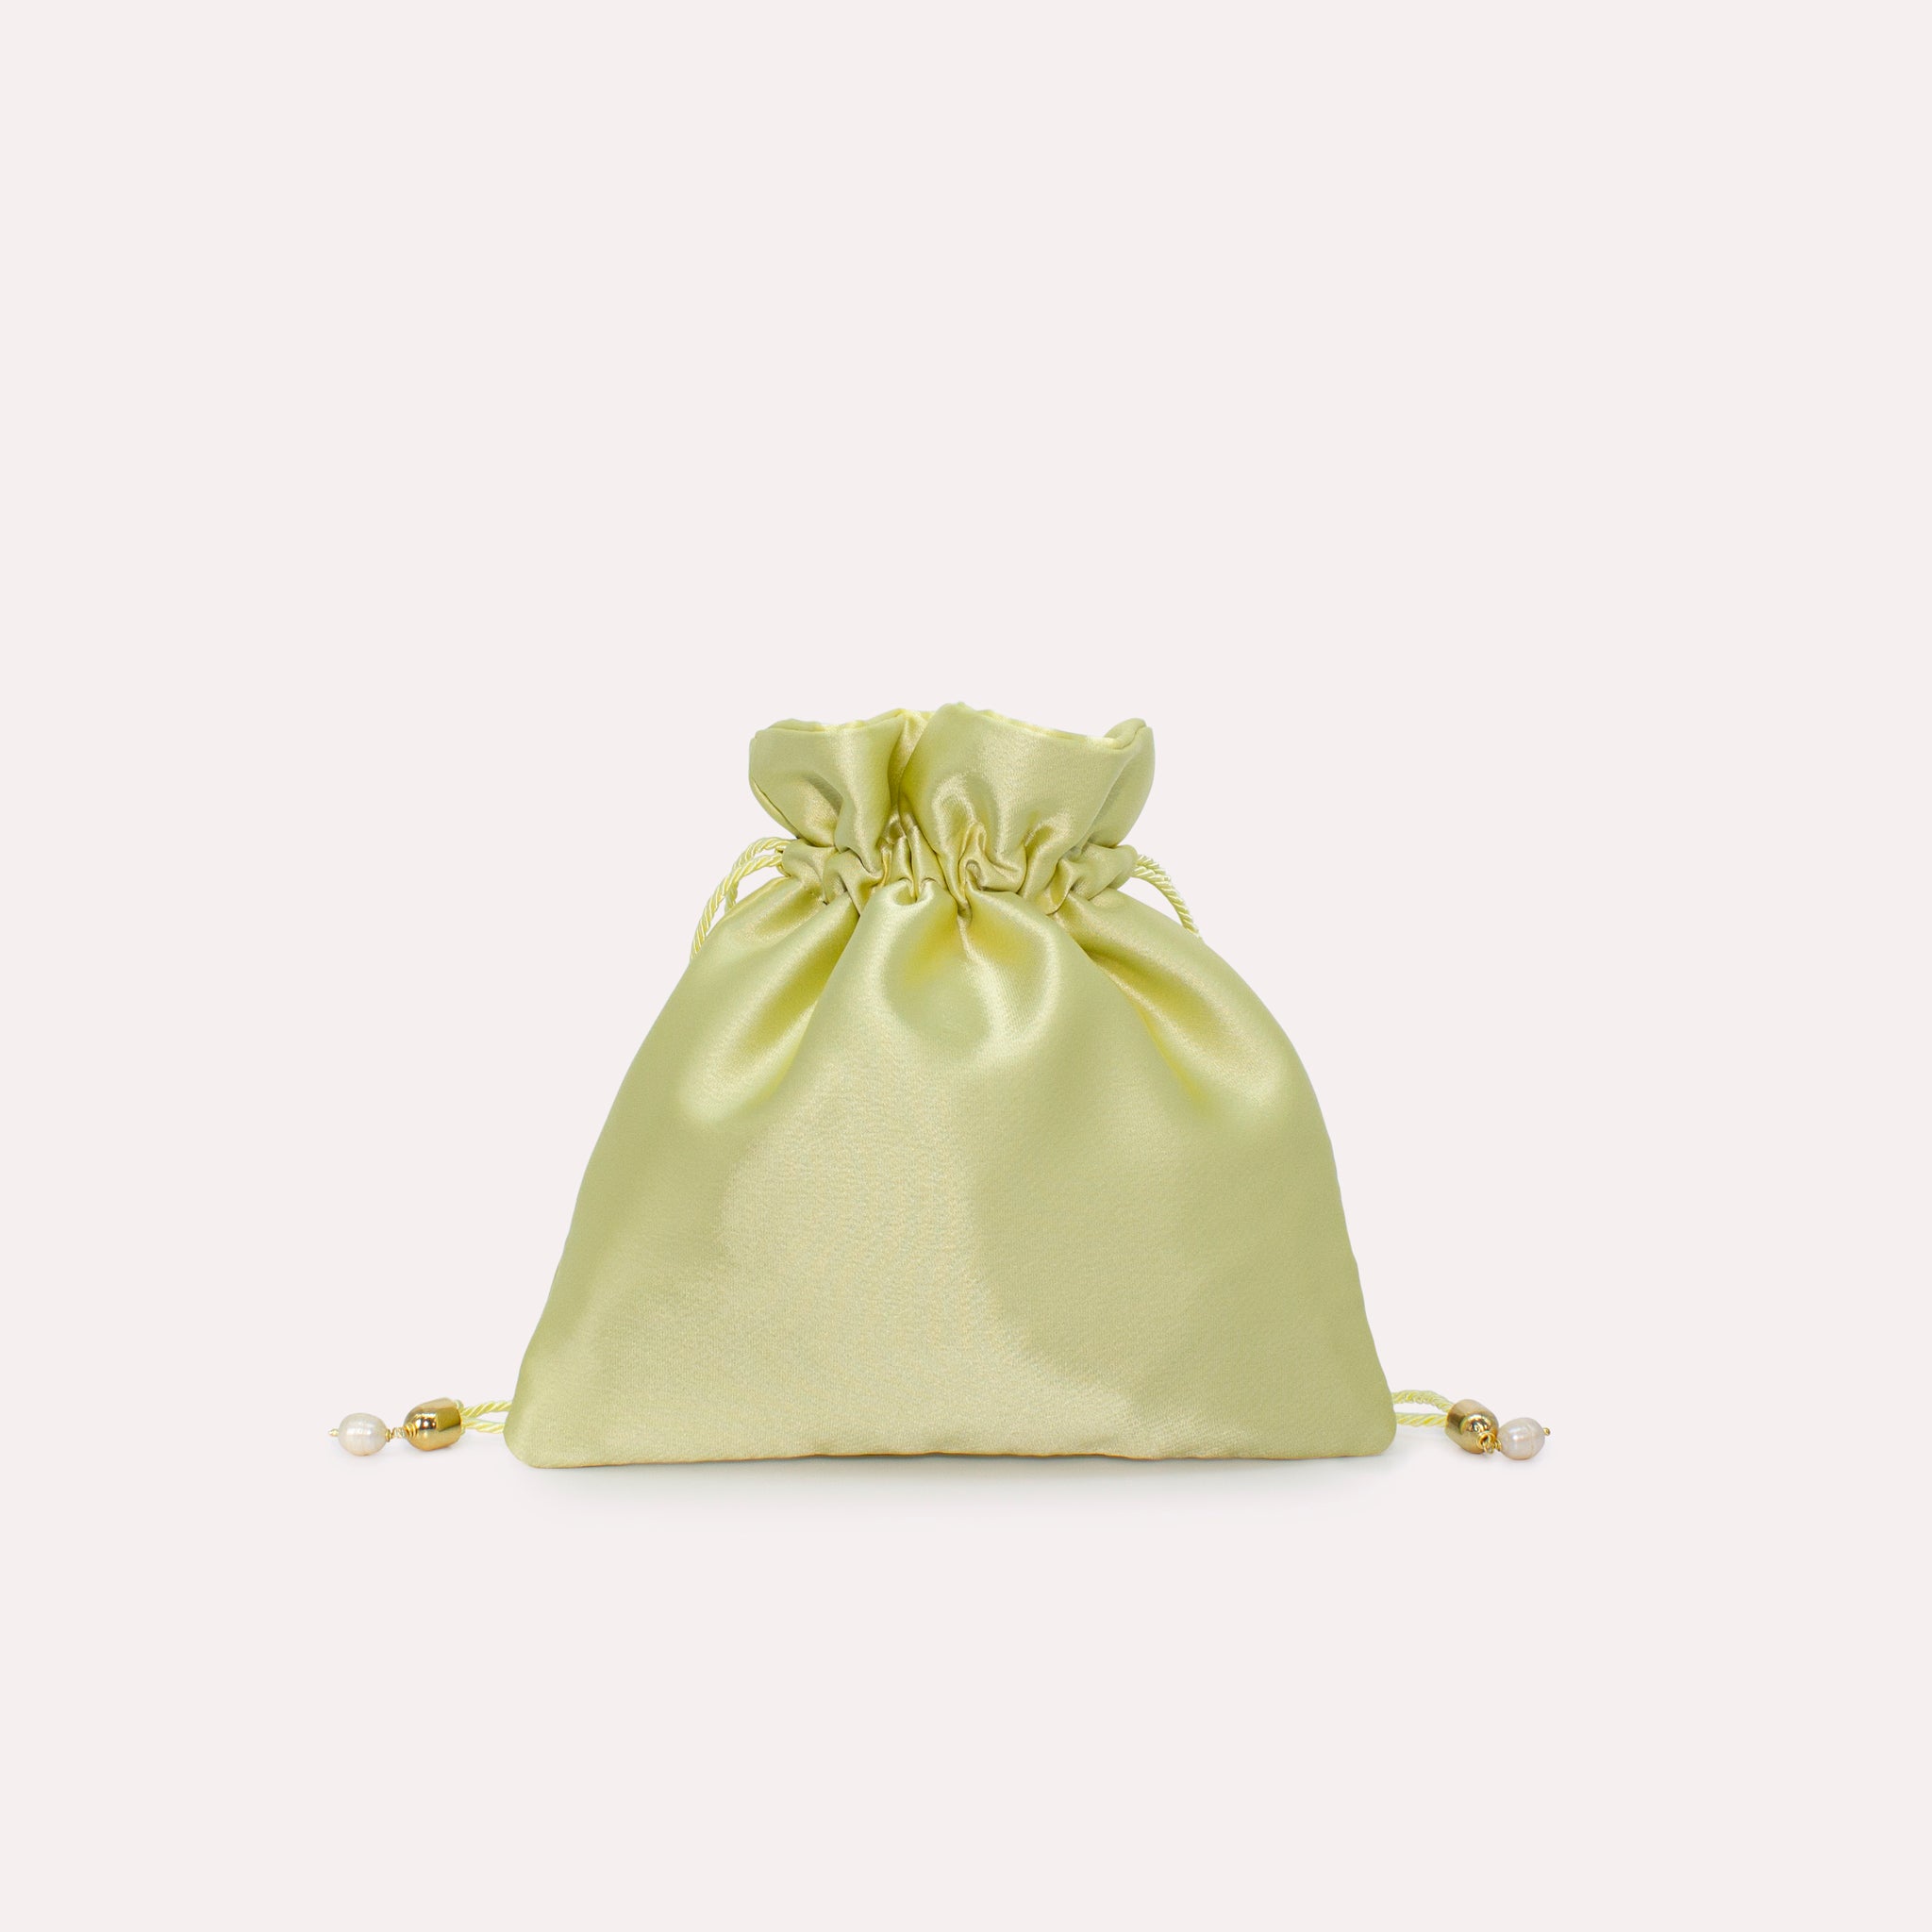 Mini Bag in colorazione pastel lime